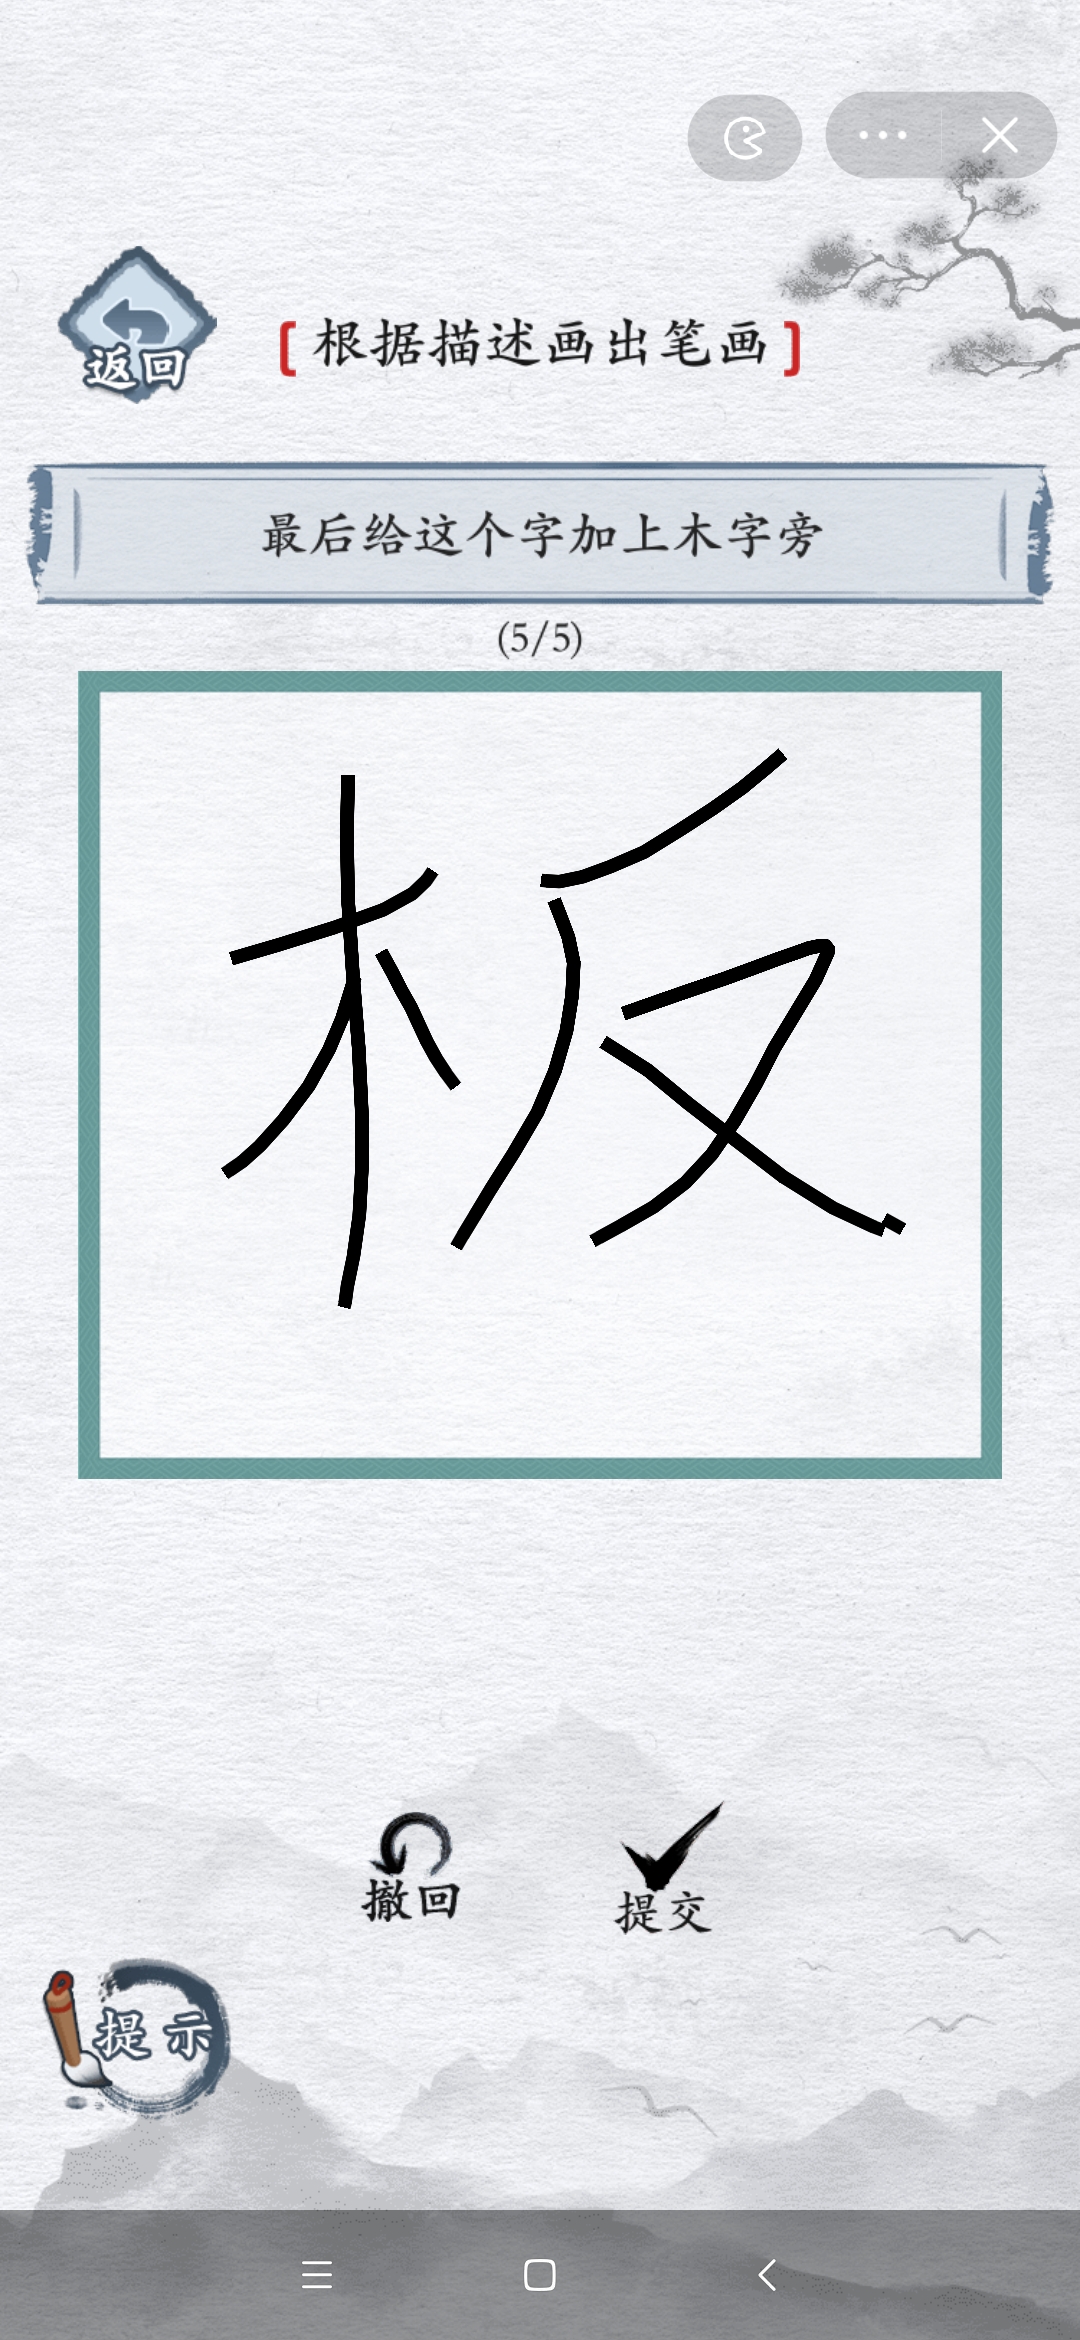 汉字进化撇撇横撇捺是什么字-撇撇横撇捺通关攻略  第6张